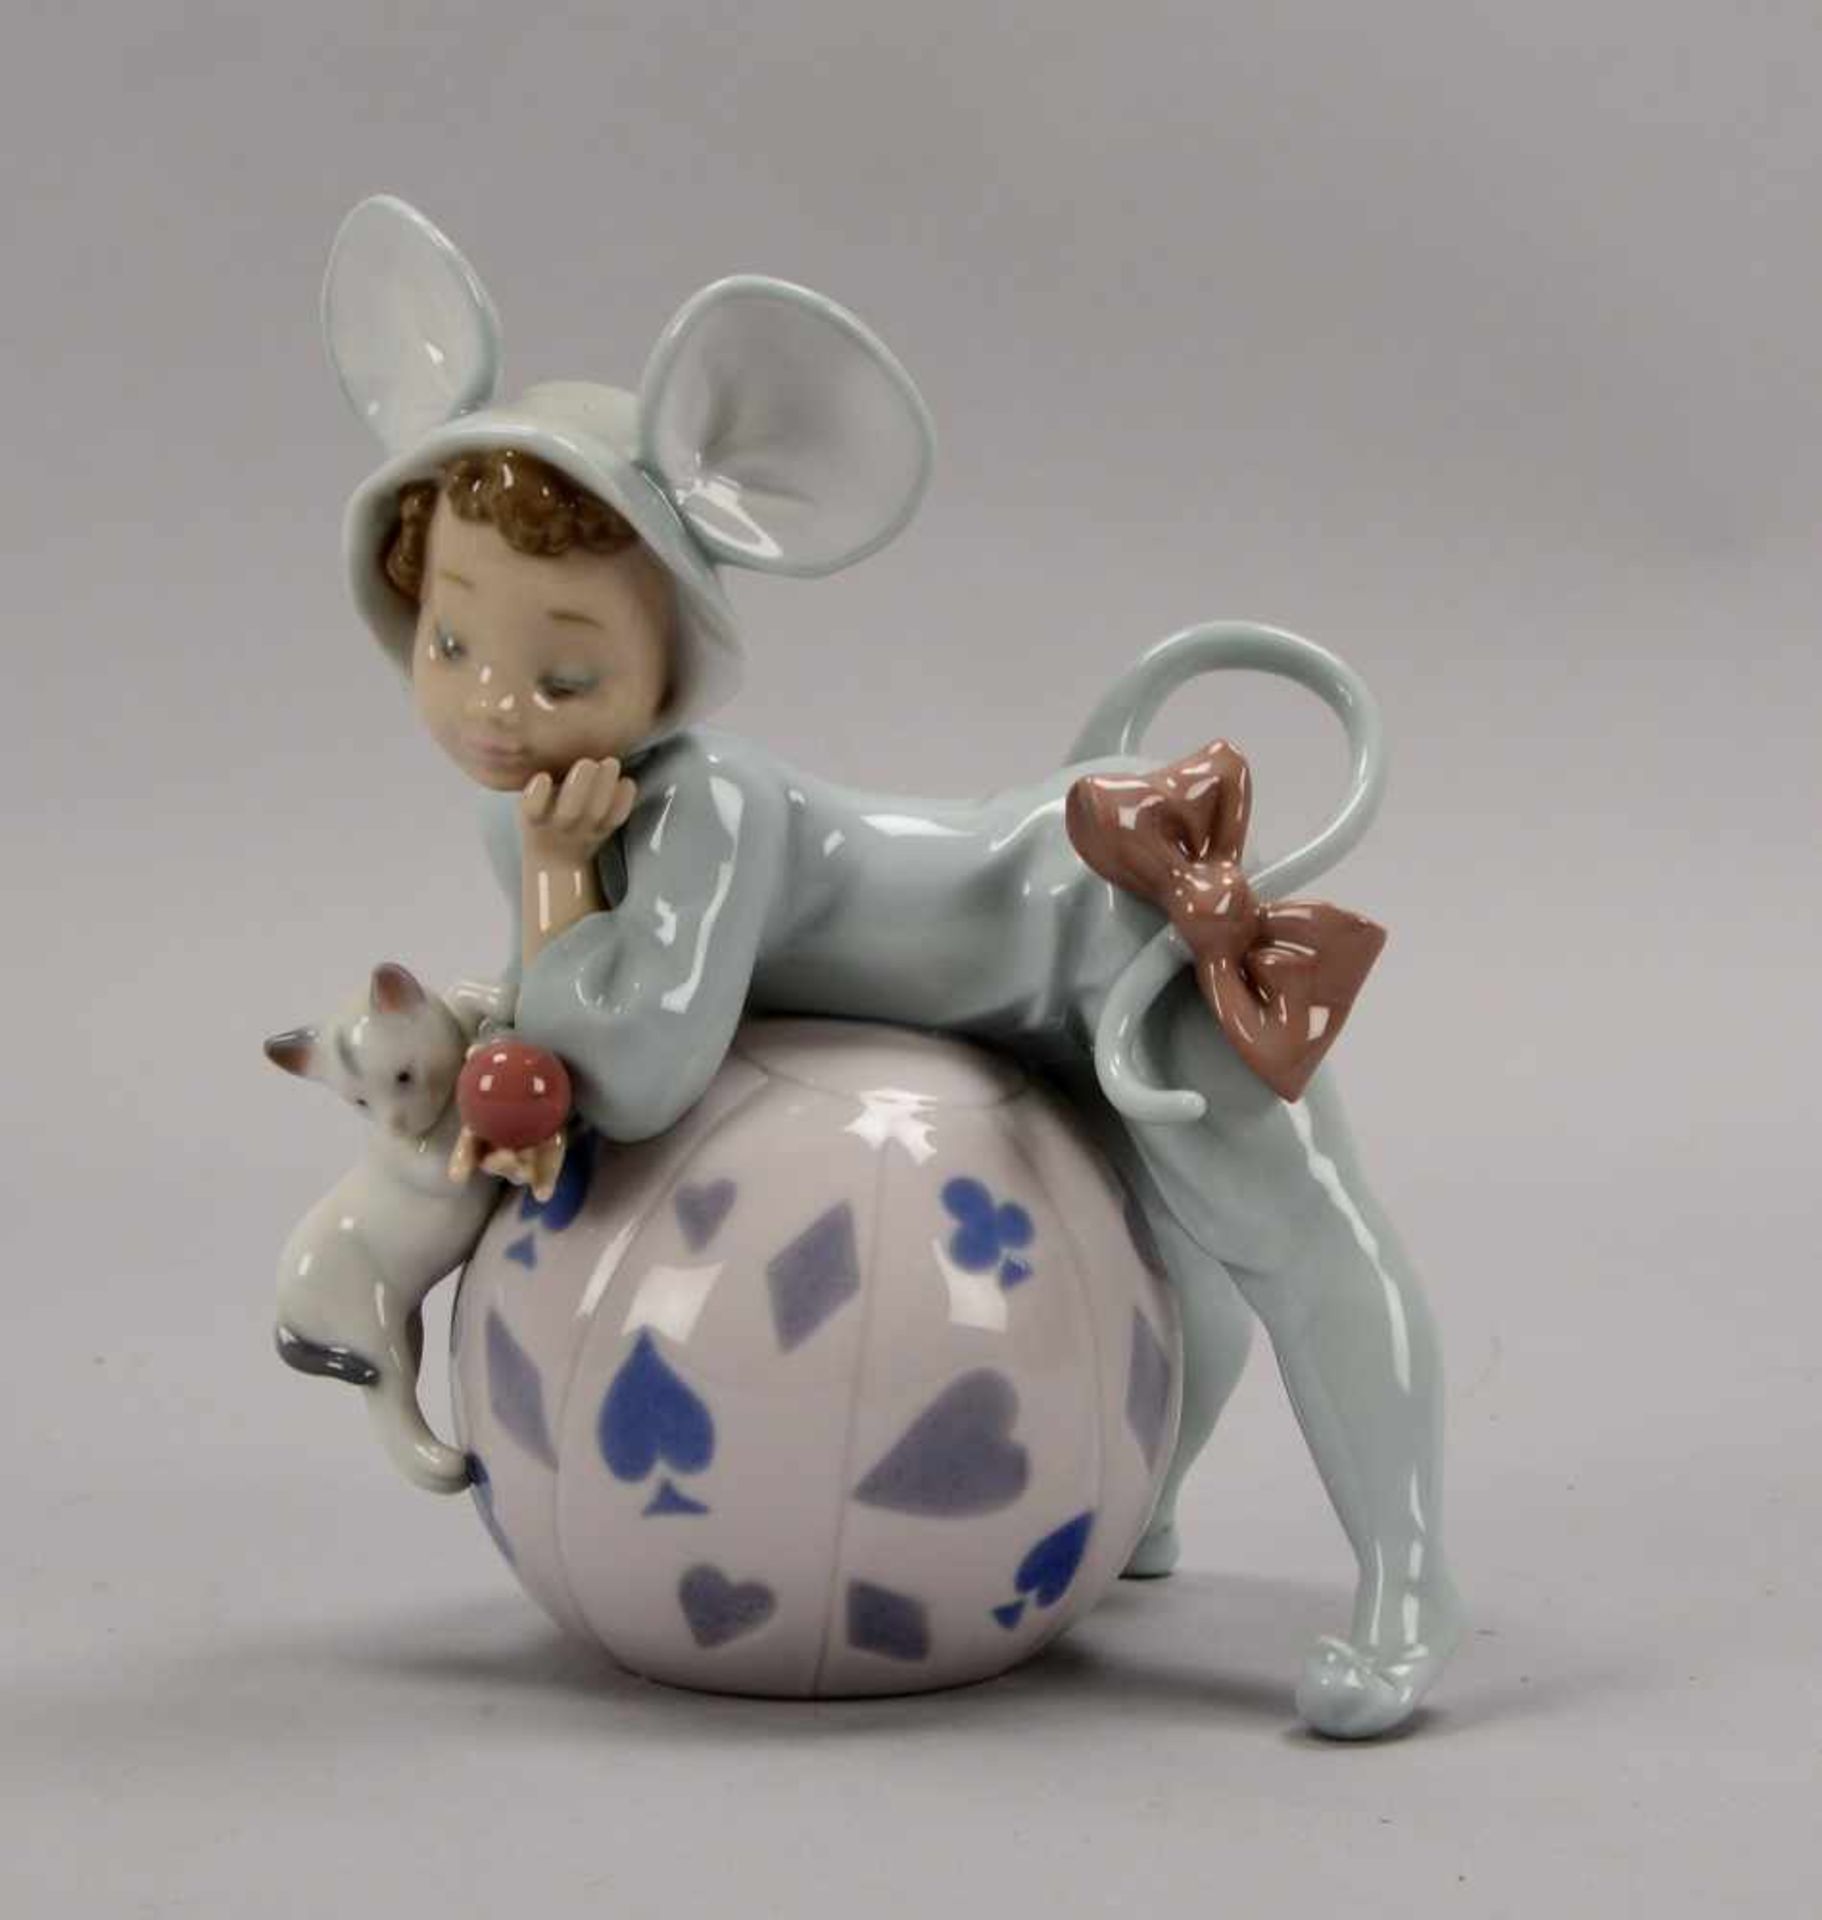 Lladro/Spanien, Porzellanfigur, 'Verträumtes Mäuschen', pastellige Unterglasurfarben, Figur in